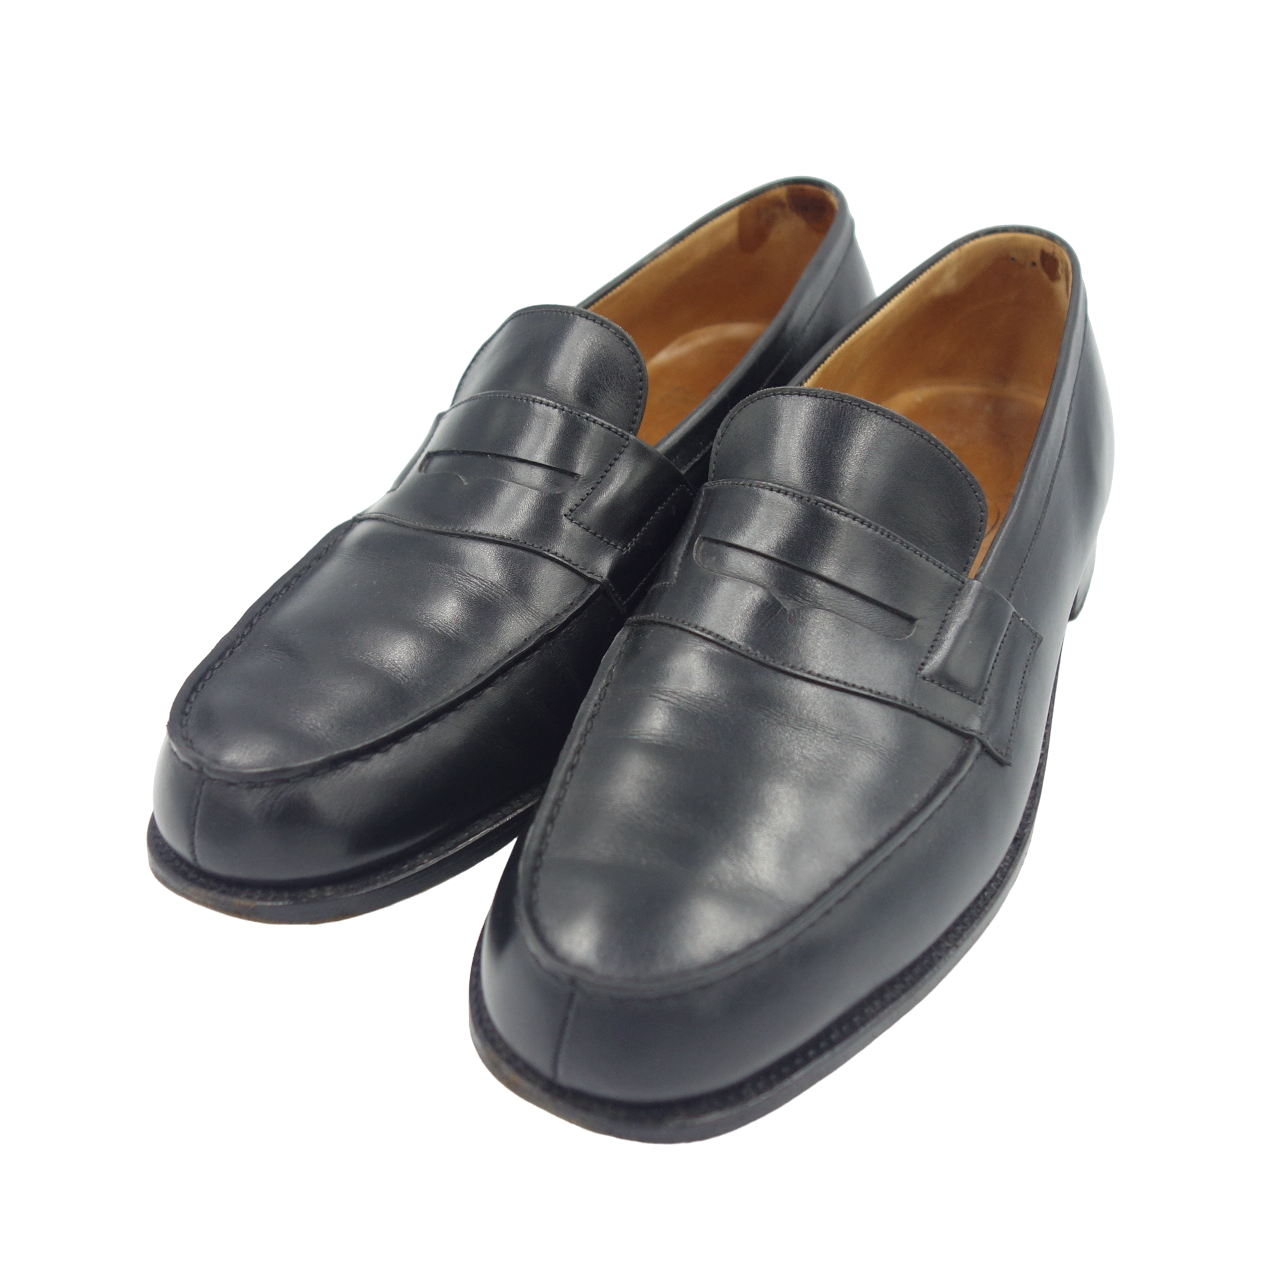 Used ◆JM Weston Leather Shoes Signature Loafers 180 Black Men's Size 9C JMWESTON [LA] 